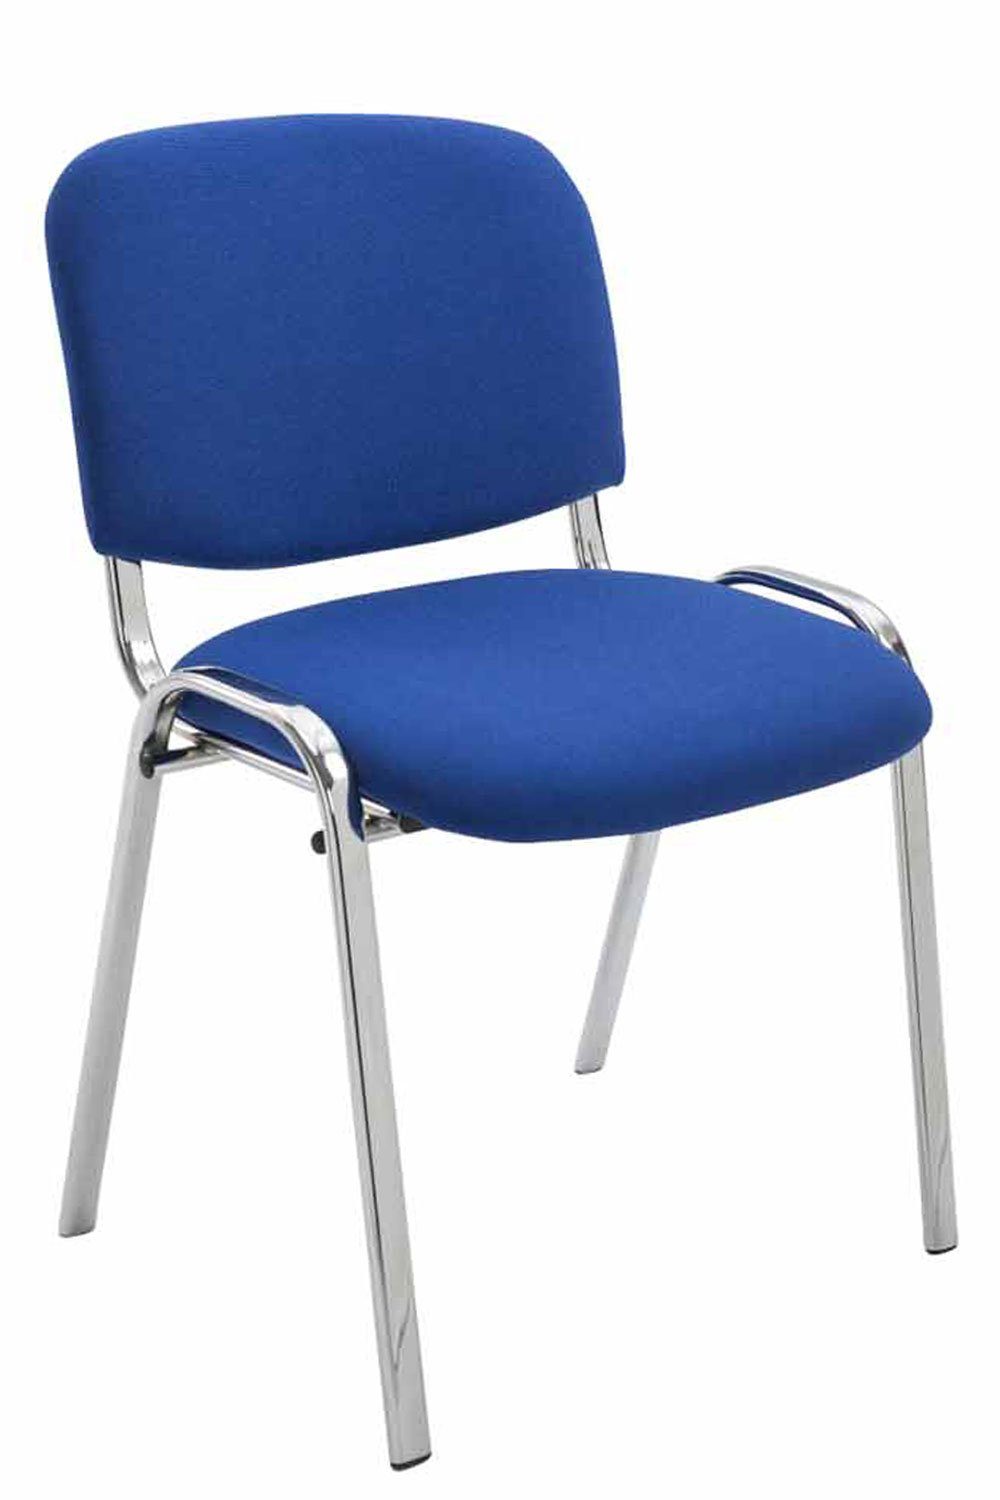 TPFLiving Besucherstuhl Keen mit hochwertiger Polsterung - Konferenzstuhl (Besprechungsstuhl - Warteraumstuhl - Messestuhl), Gestell: Metall chrom - Sitzfläche: Stoff blau | Besucherstühle